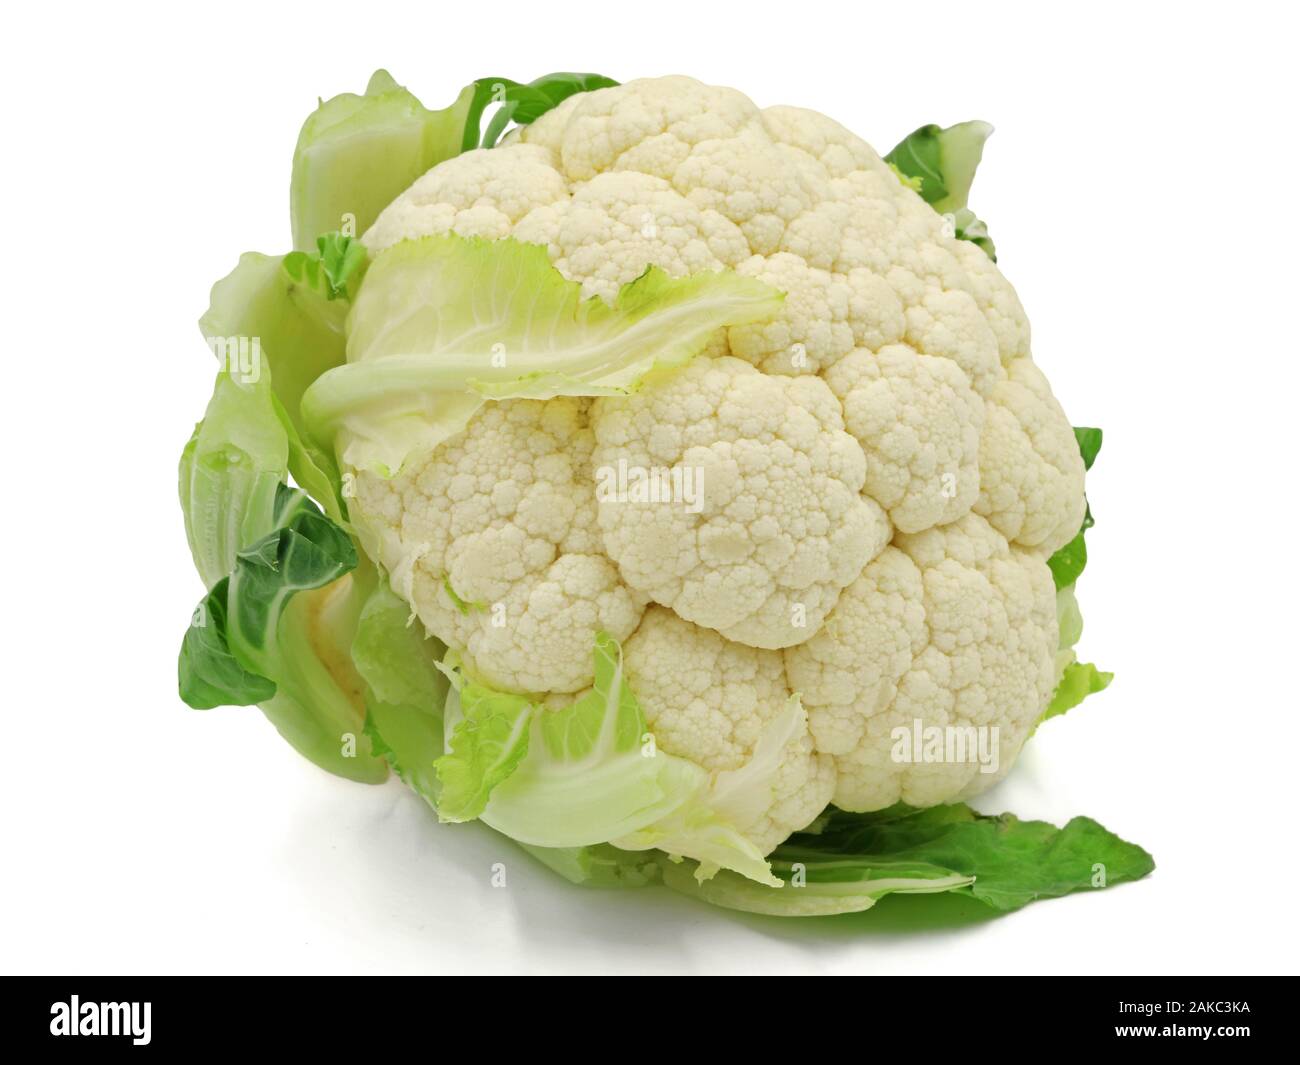 whole raw cauliflower, whole vegetable, isolated on white background Stock Photo